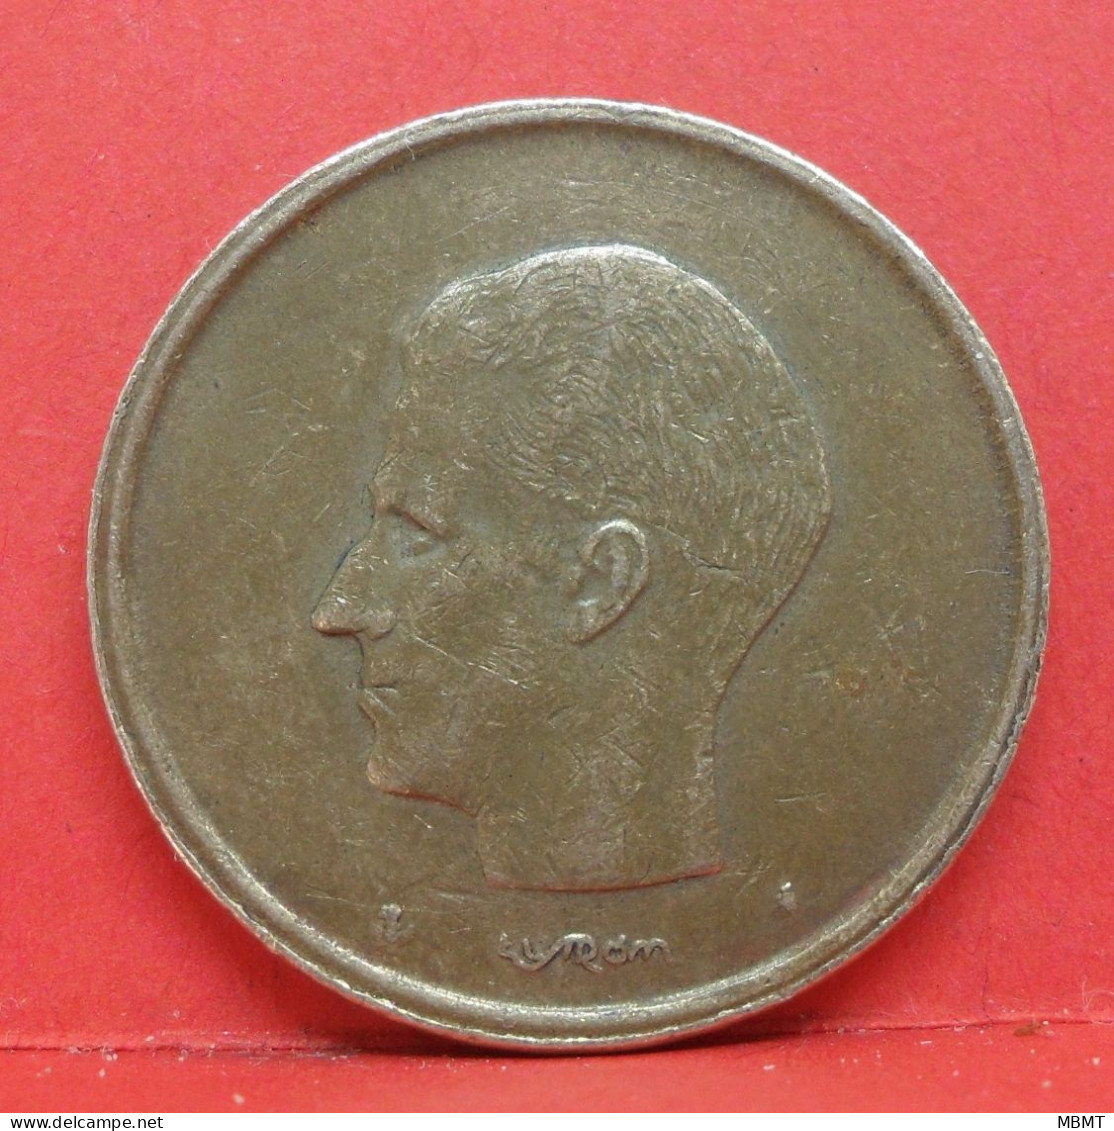 20 francs 1981 - TTB - pièce monnaie Belgique - Article N°1845